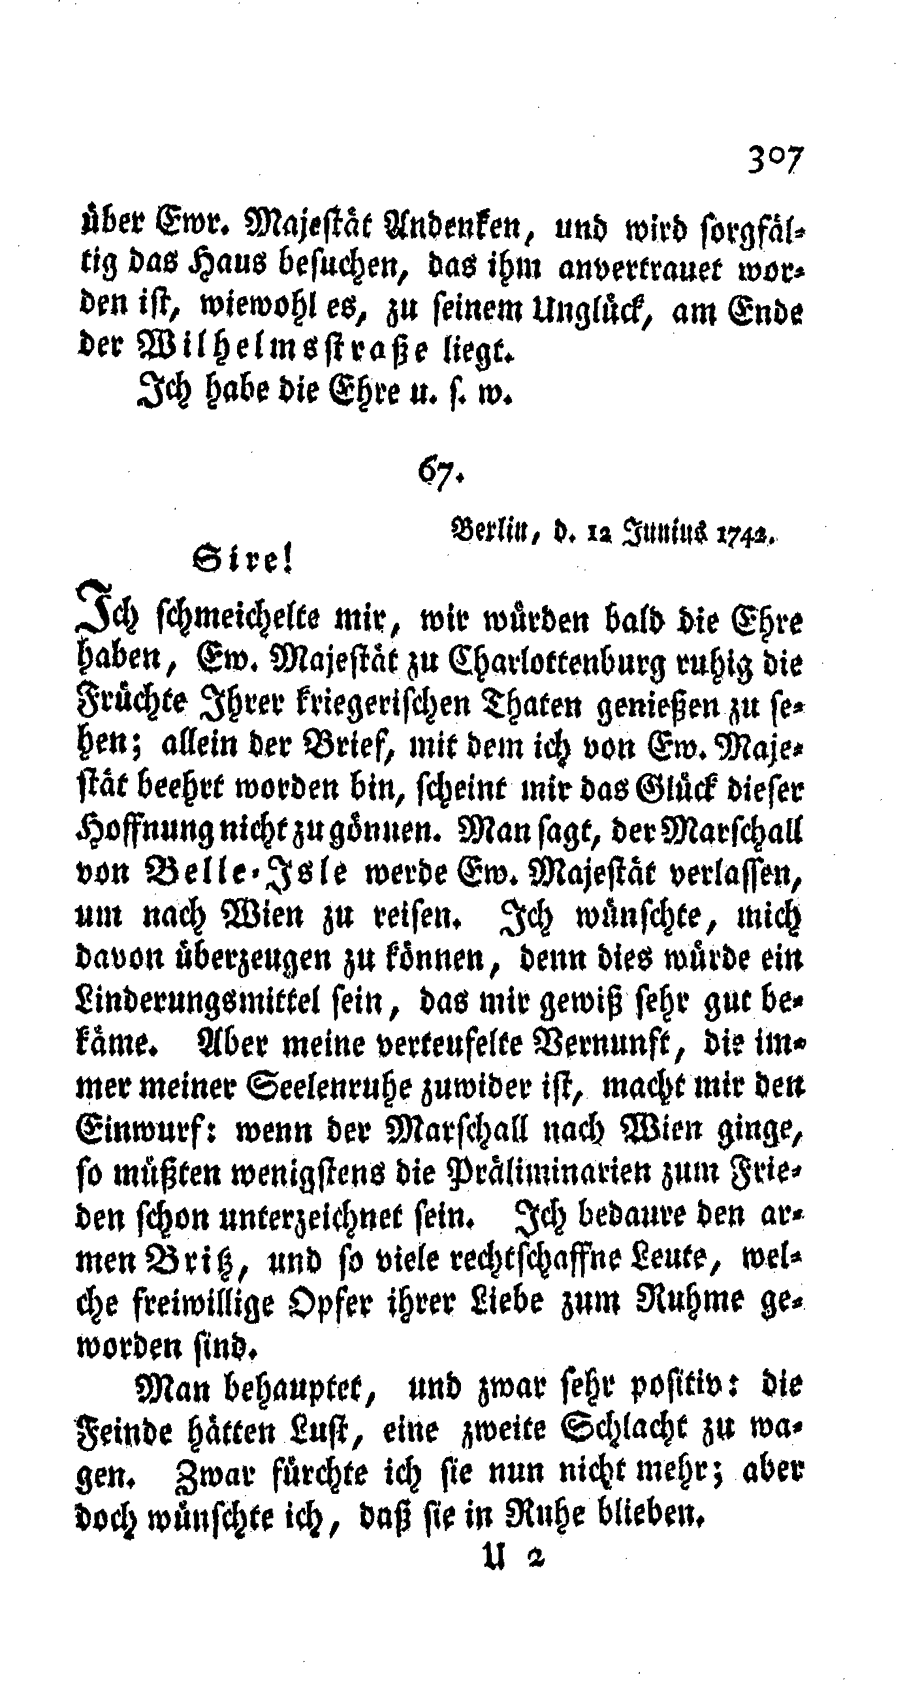 S. 307, Obj. 2